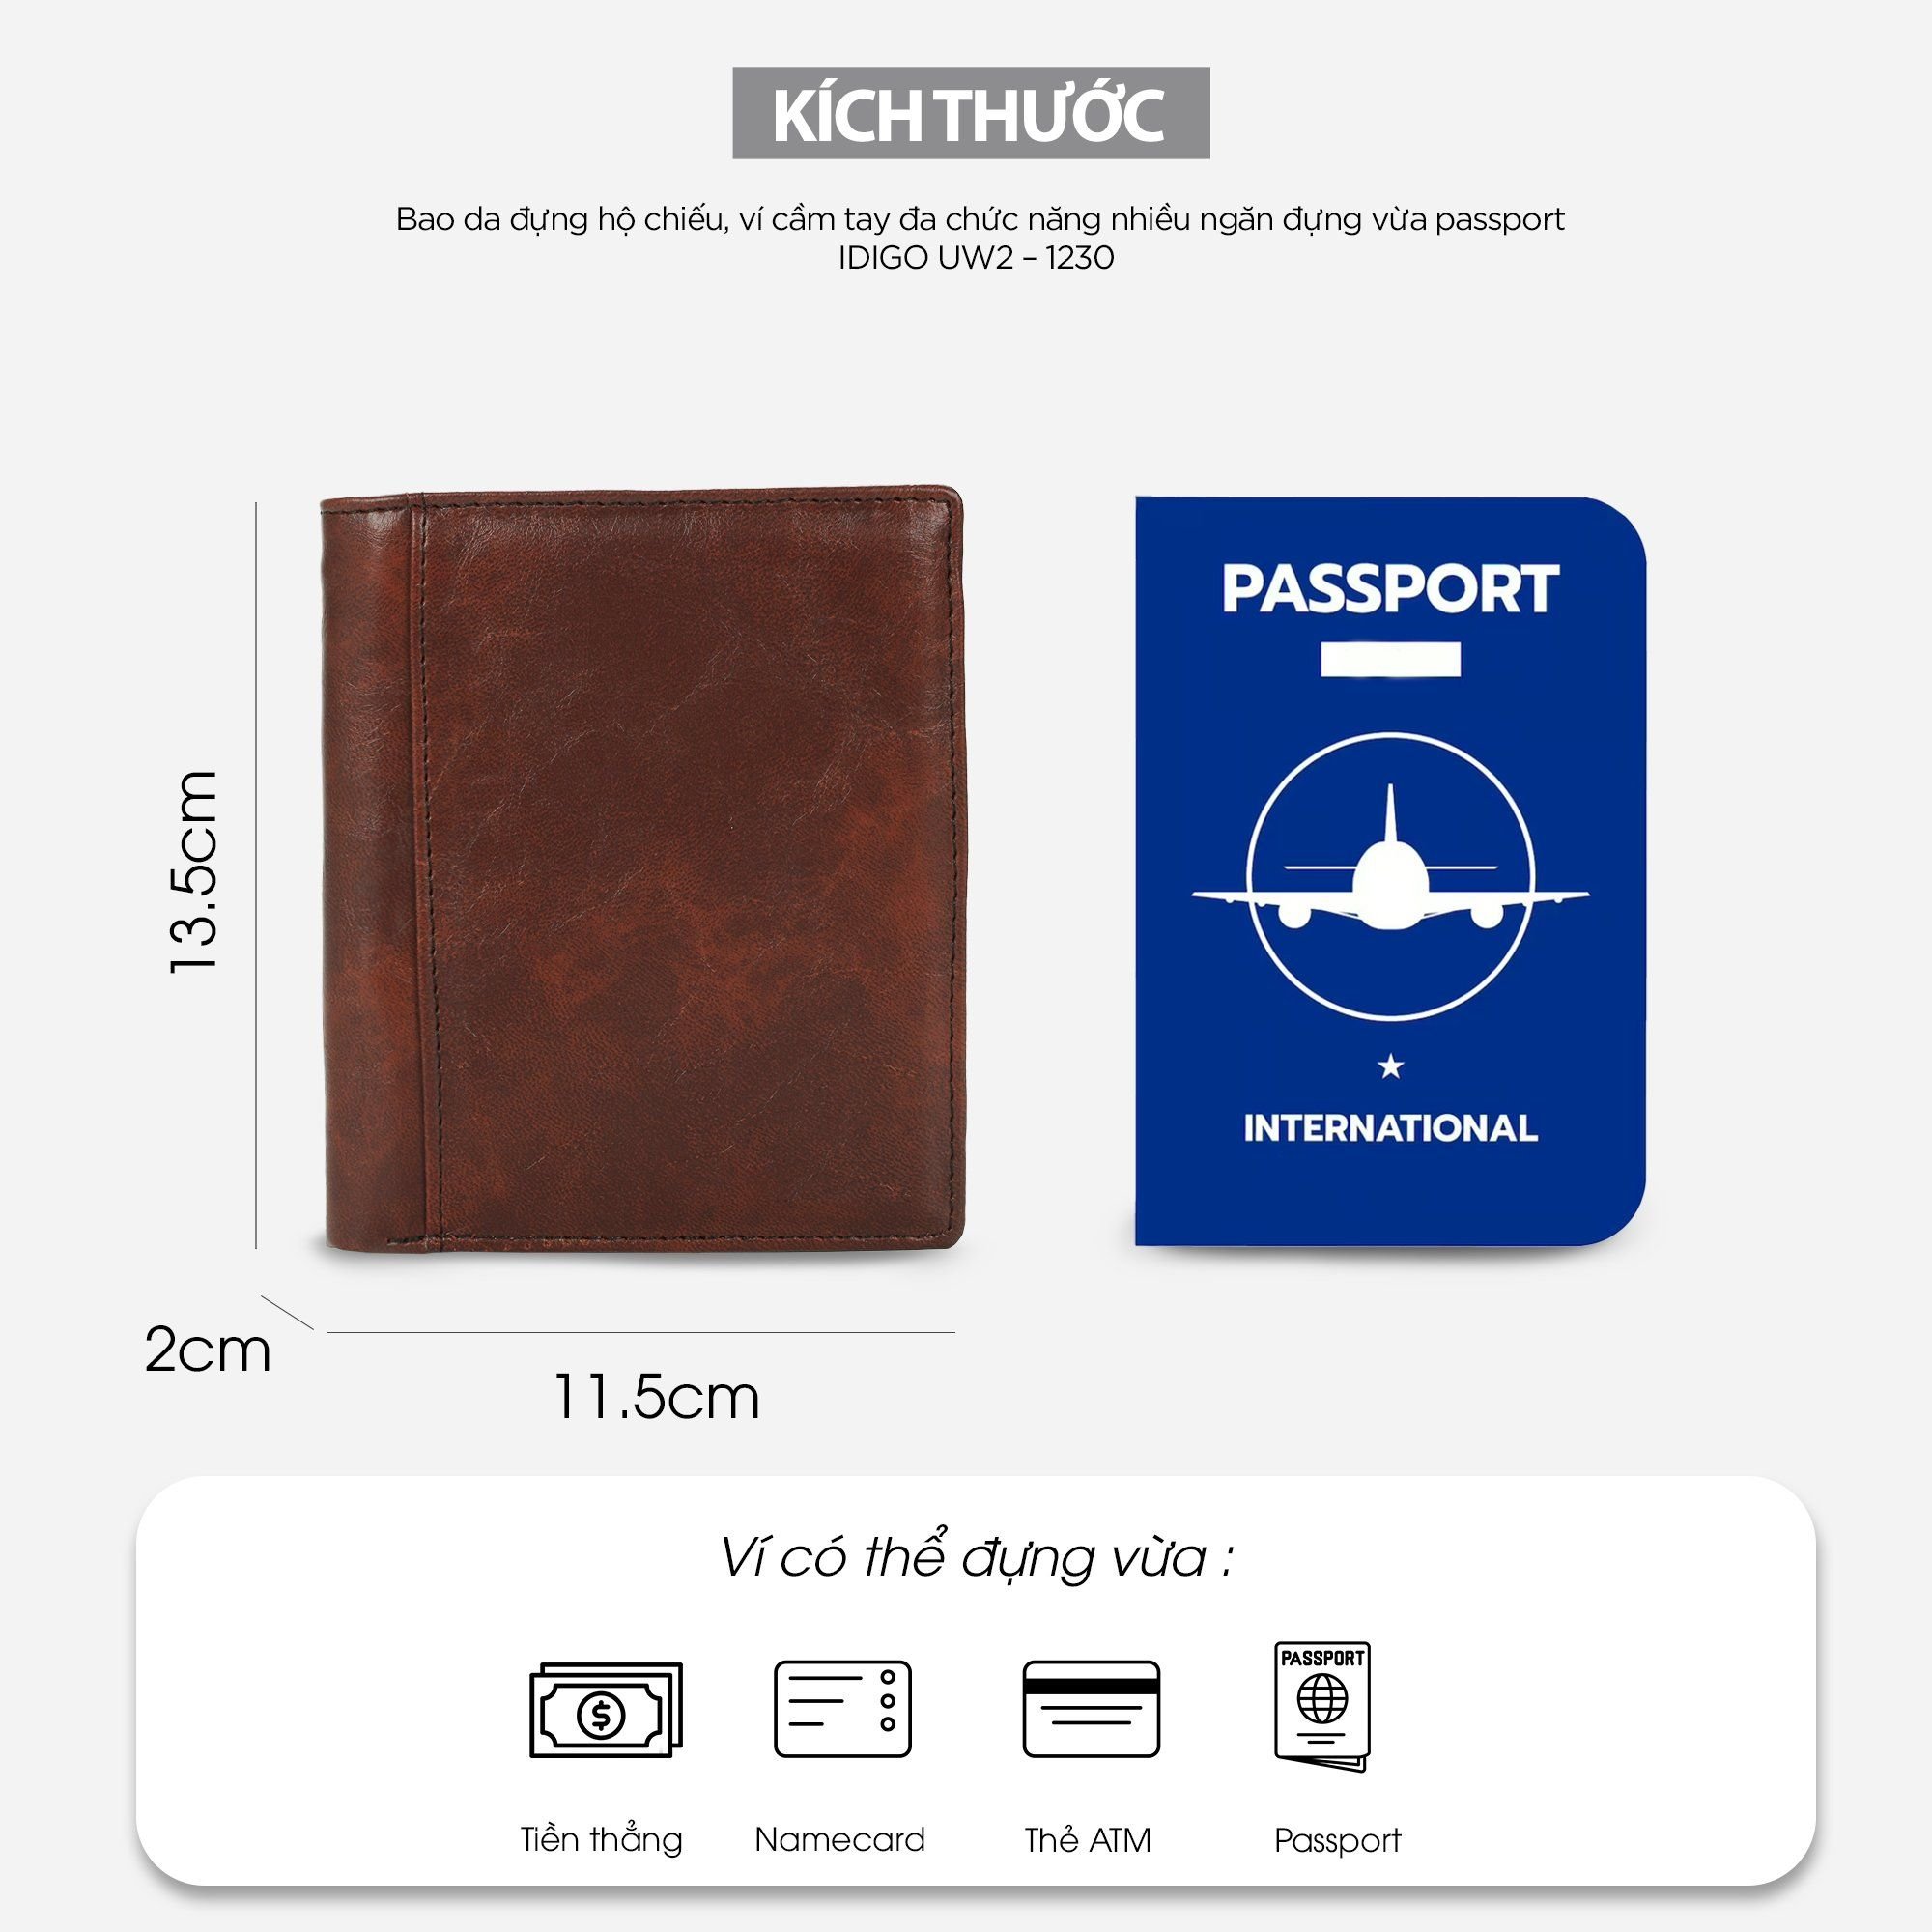  Bao da đựng hộ chiếu, ví cầm tay đa chức năng nhiều ngăn đựng vừa passport IDIGO UW2 - 1230 